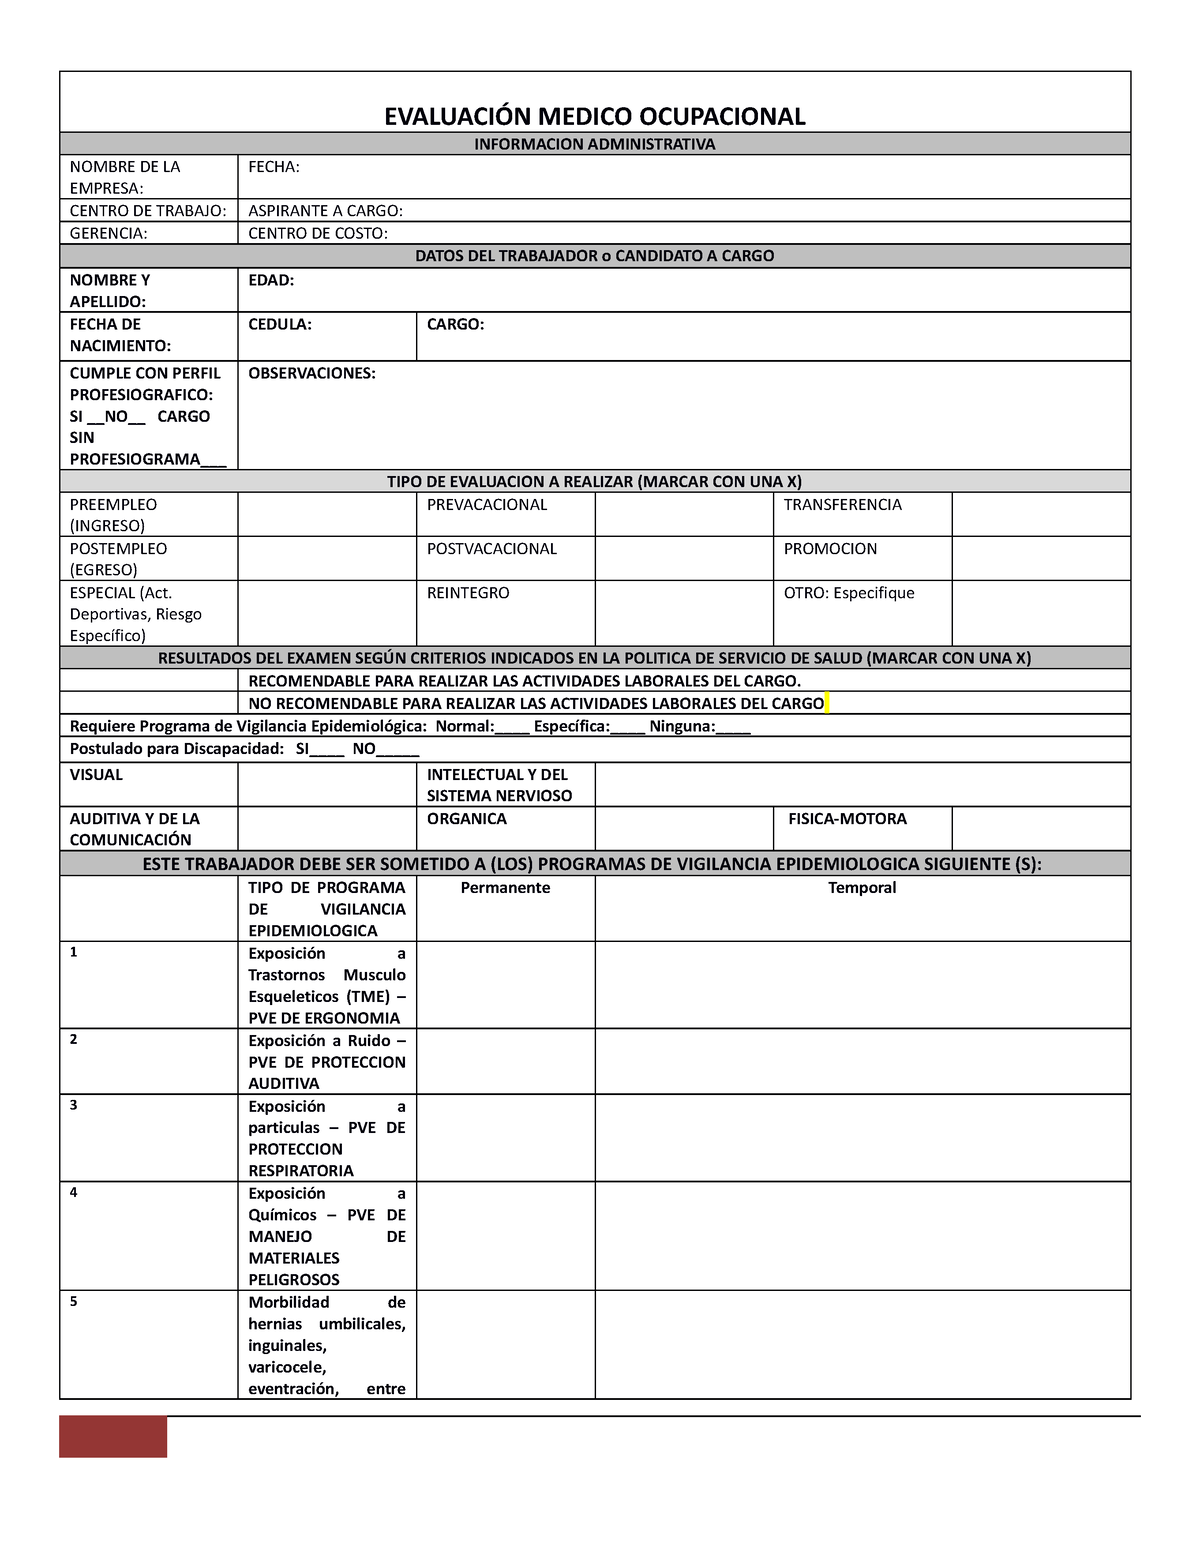 Formato De Examen Medico Laboral EvaluaciÓn Medico Ocupacional Informacion Administrativa 9206